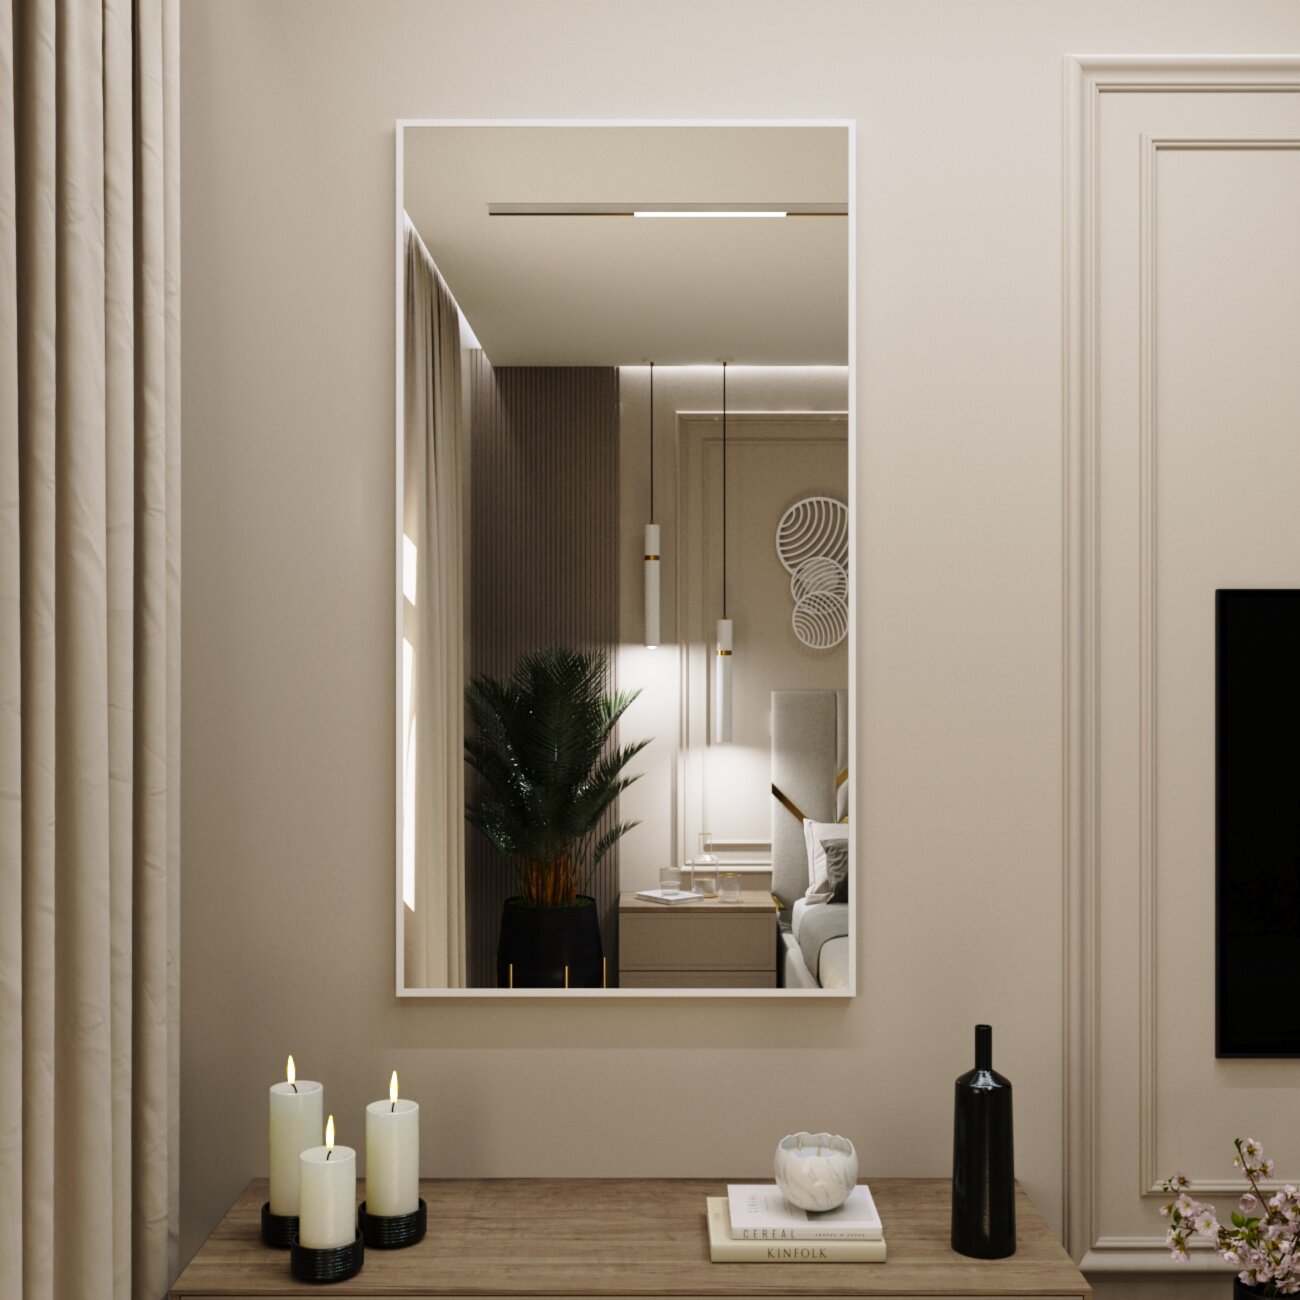 Зеркало интерьерное в алюминиевой раме настенное Market-house 130х60 см. Белое